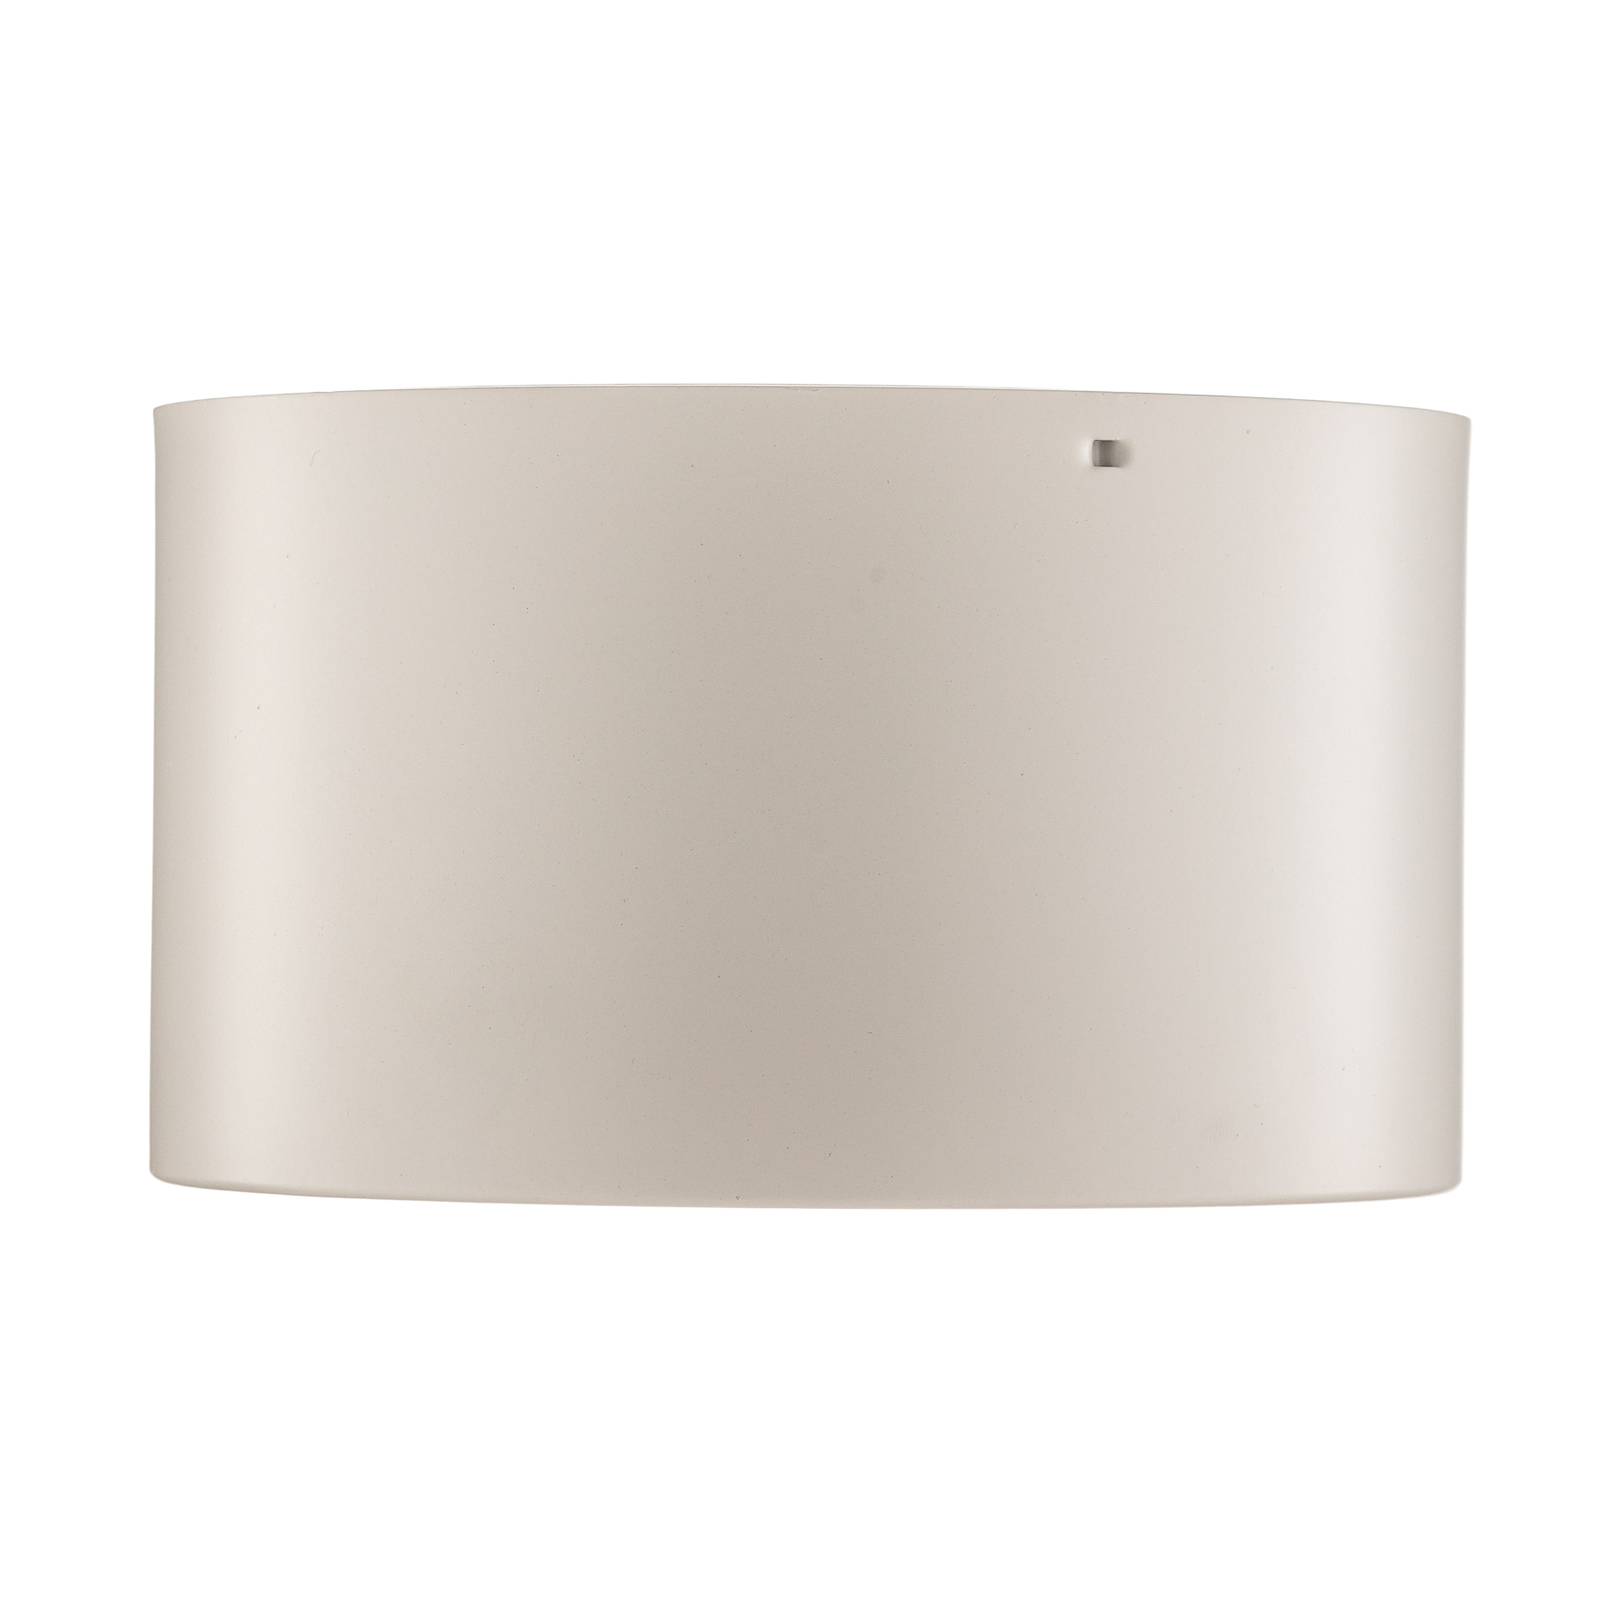 LED-Downlight Ita in Weiß mit Diffusor, Ø 15 cm